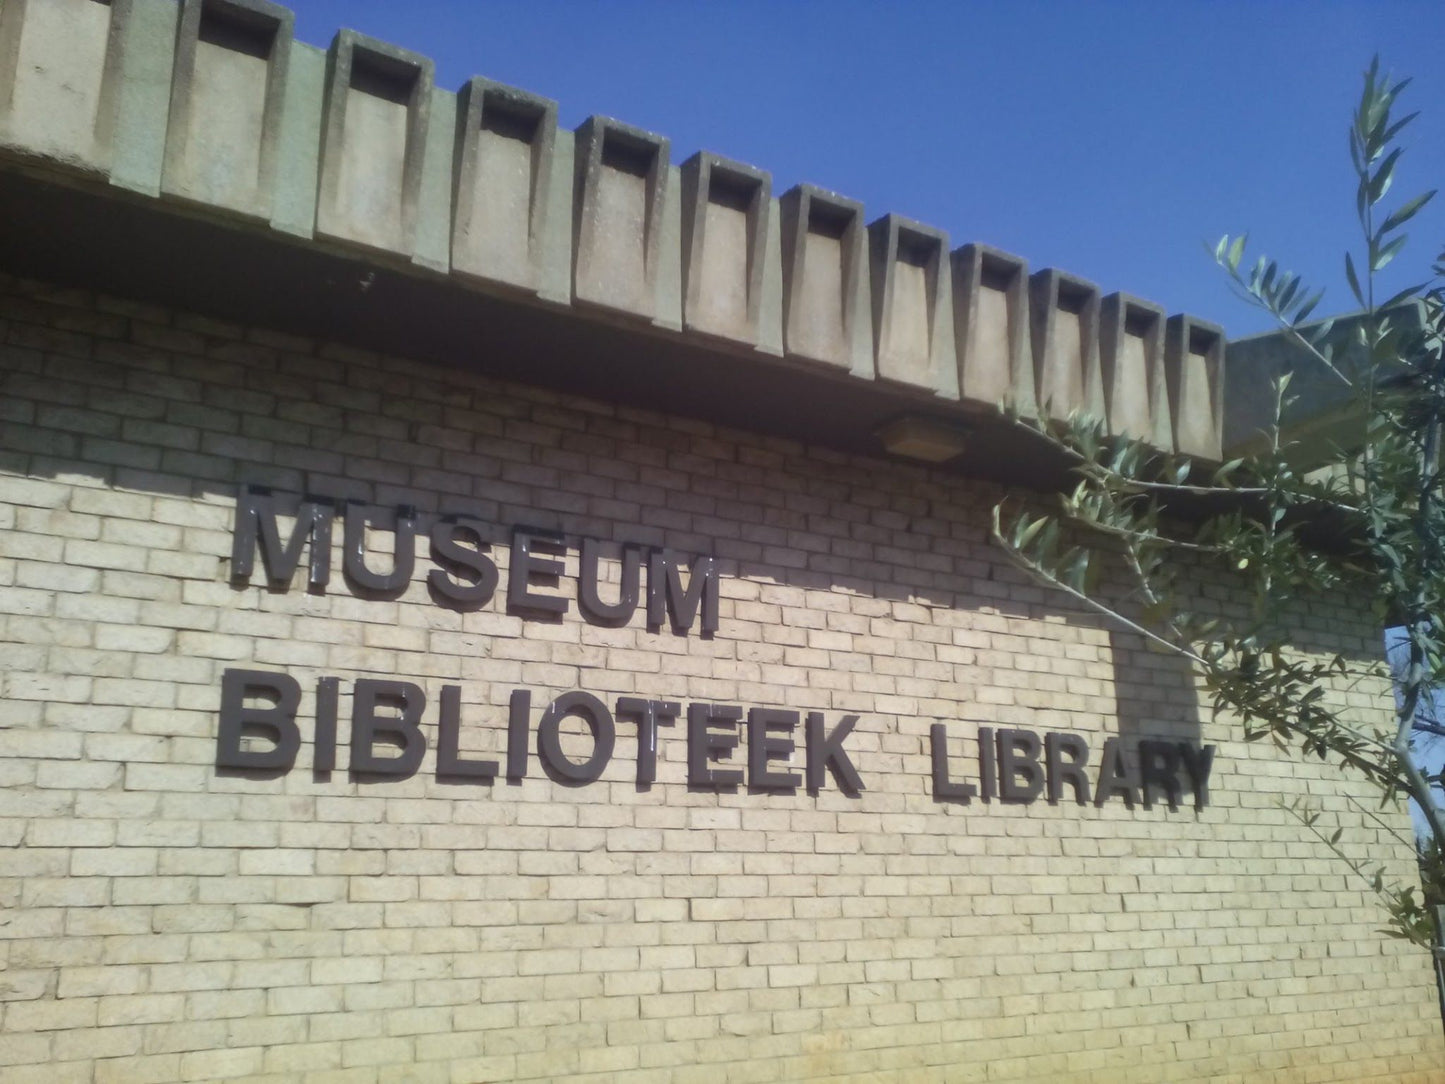  Potchefstroom Museum